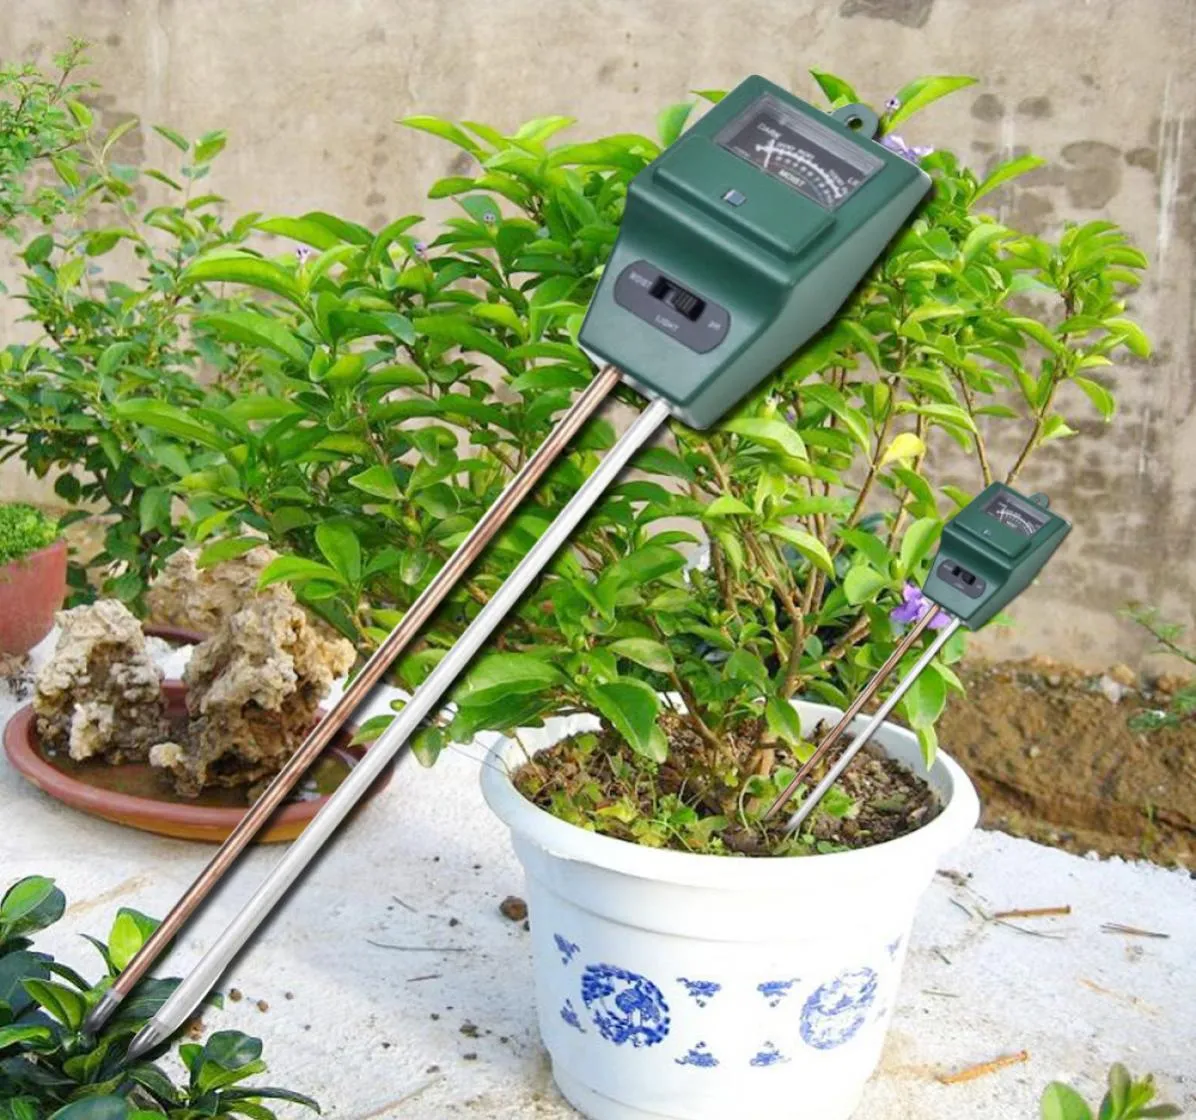 Neue Ankunft 3 in 1 PH Tester Boden Detektor Wasser Feuchtigkeit feuchtigkeit Licht Test Meter Sensor für Garten Pflanze Blume6013593